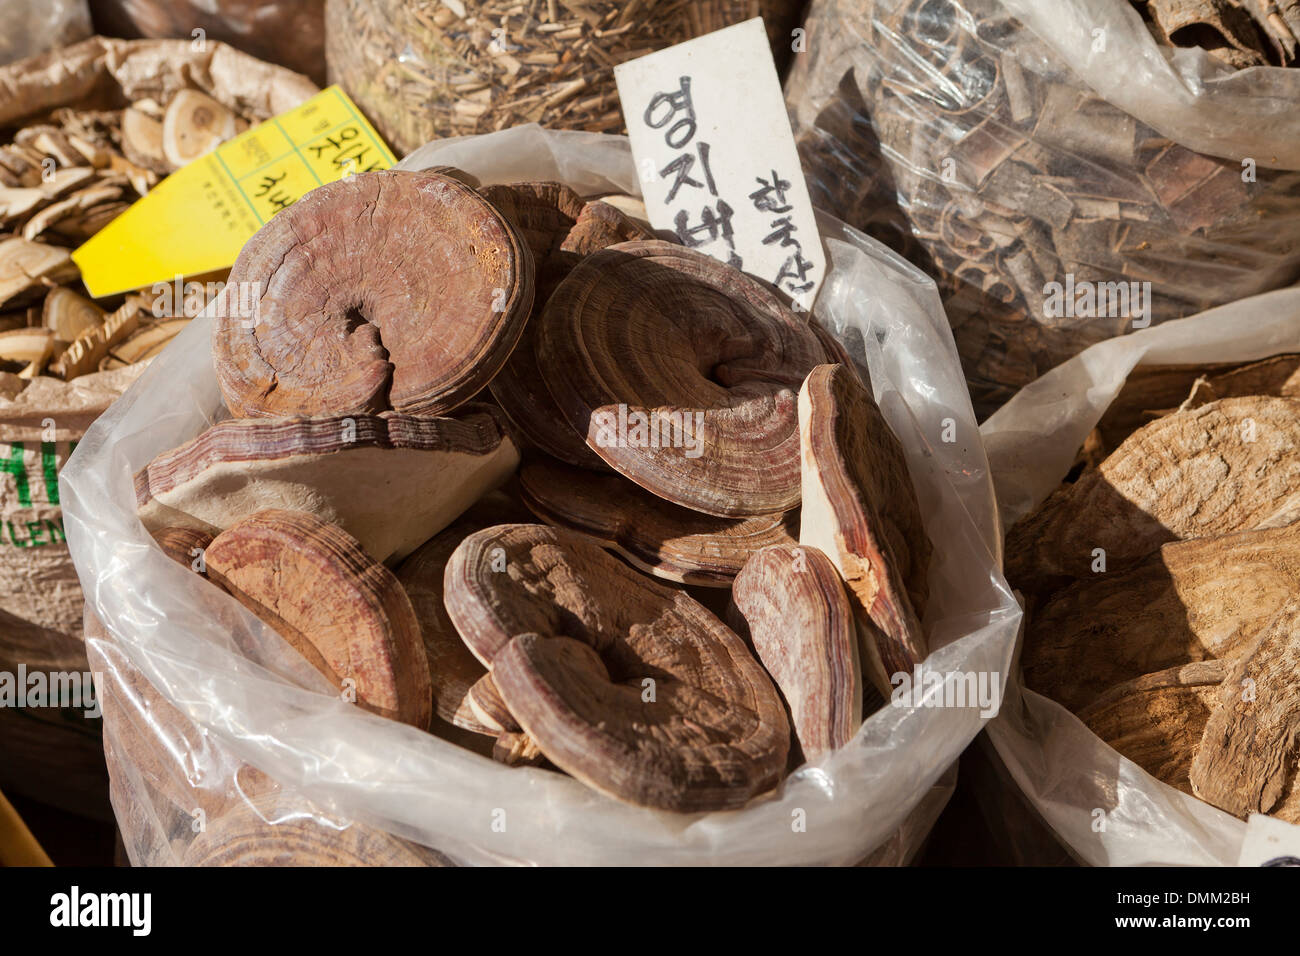 Dried Korean lingzhi mushrooms (Ganoderma lucidum) used in traditional medicine - Busan, South Korea Stock Photo